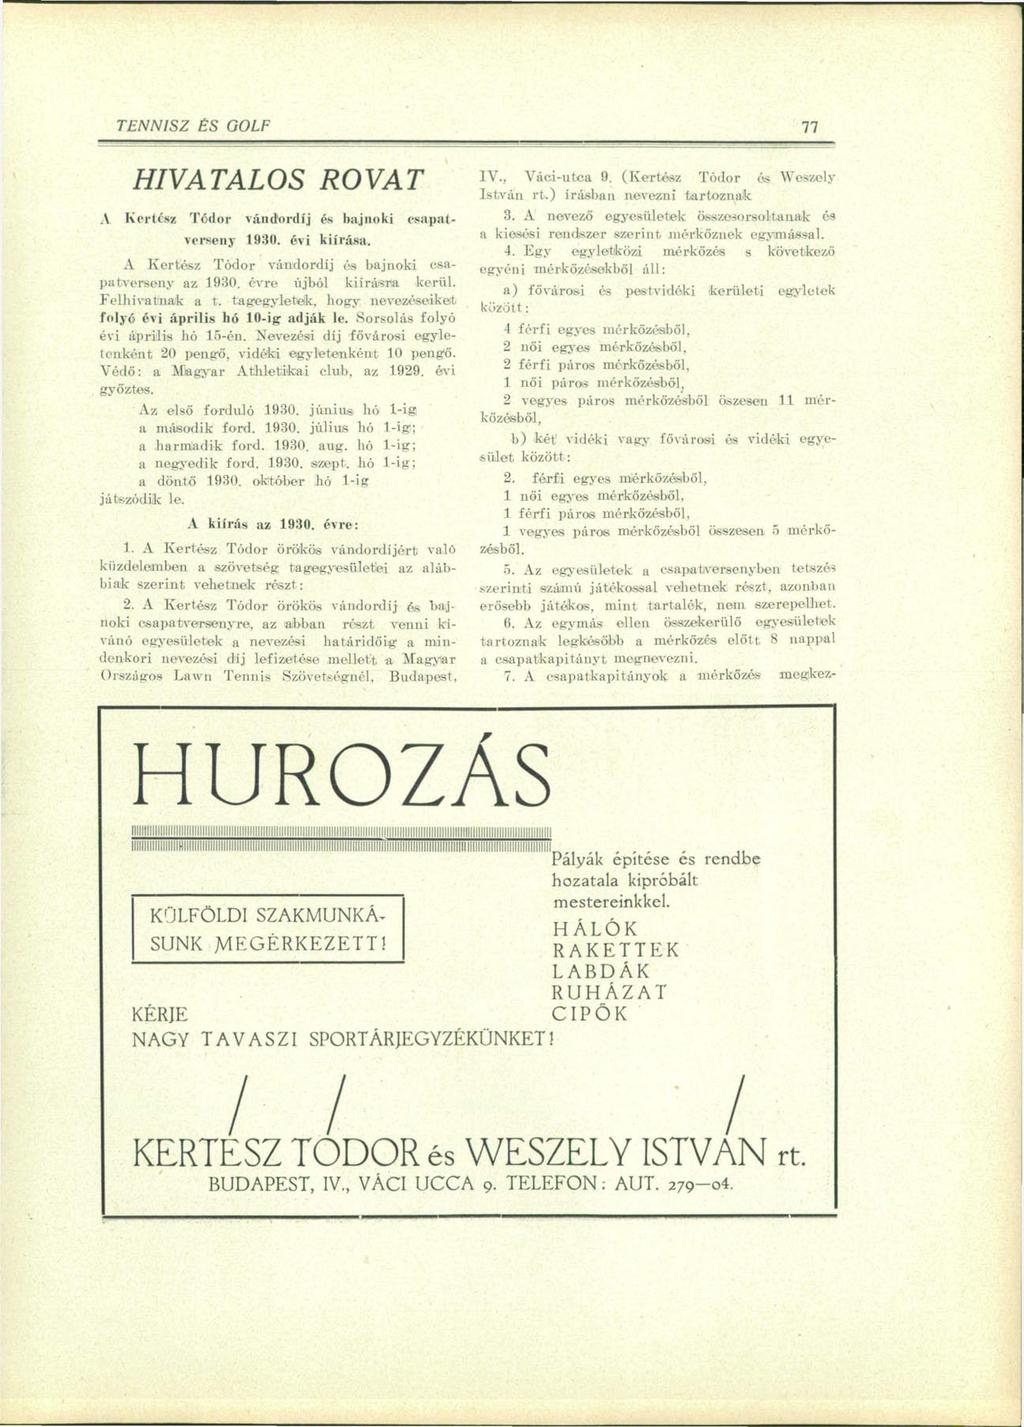 TENNISZ ES GOLF 77 HIVATALOS ROVAT A Kertész Tódor vándordíj és bajnoki csapatverseny 1930. évi kiírása. A Kertész Tódor vándordíj ós bajnoki csapatverseny az 1930. évre újból kiírásra kerül.